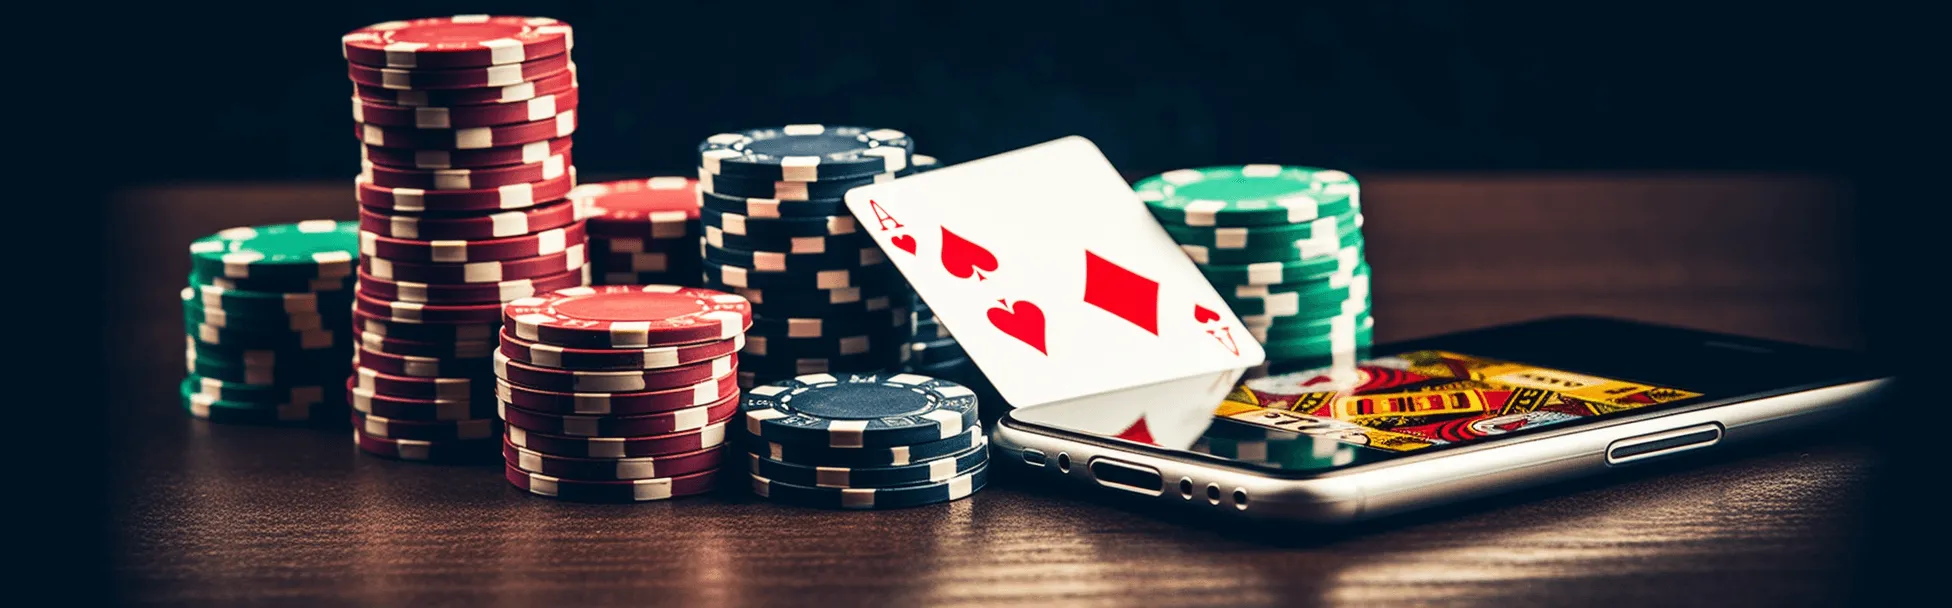 Aplicativos de Poker com Dinheiro Real - Qual é o melhor? - Yourpokerdream.com